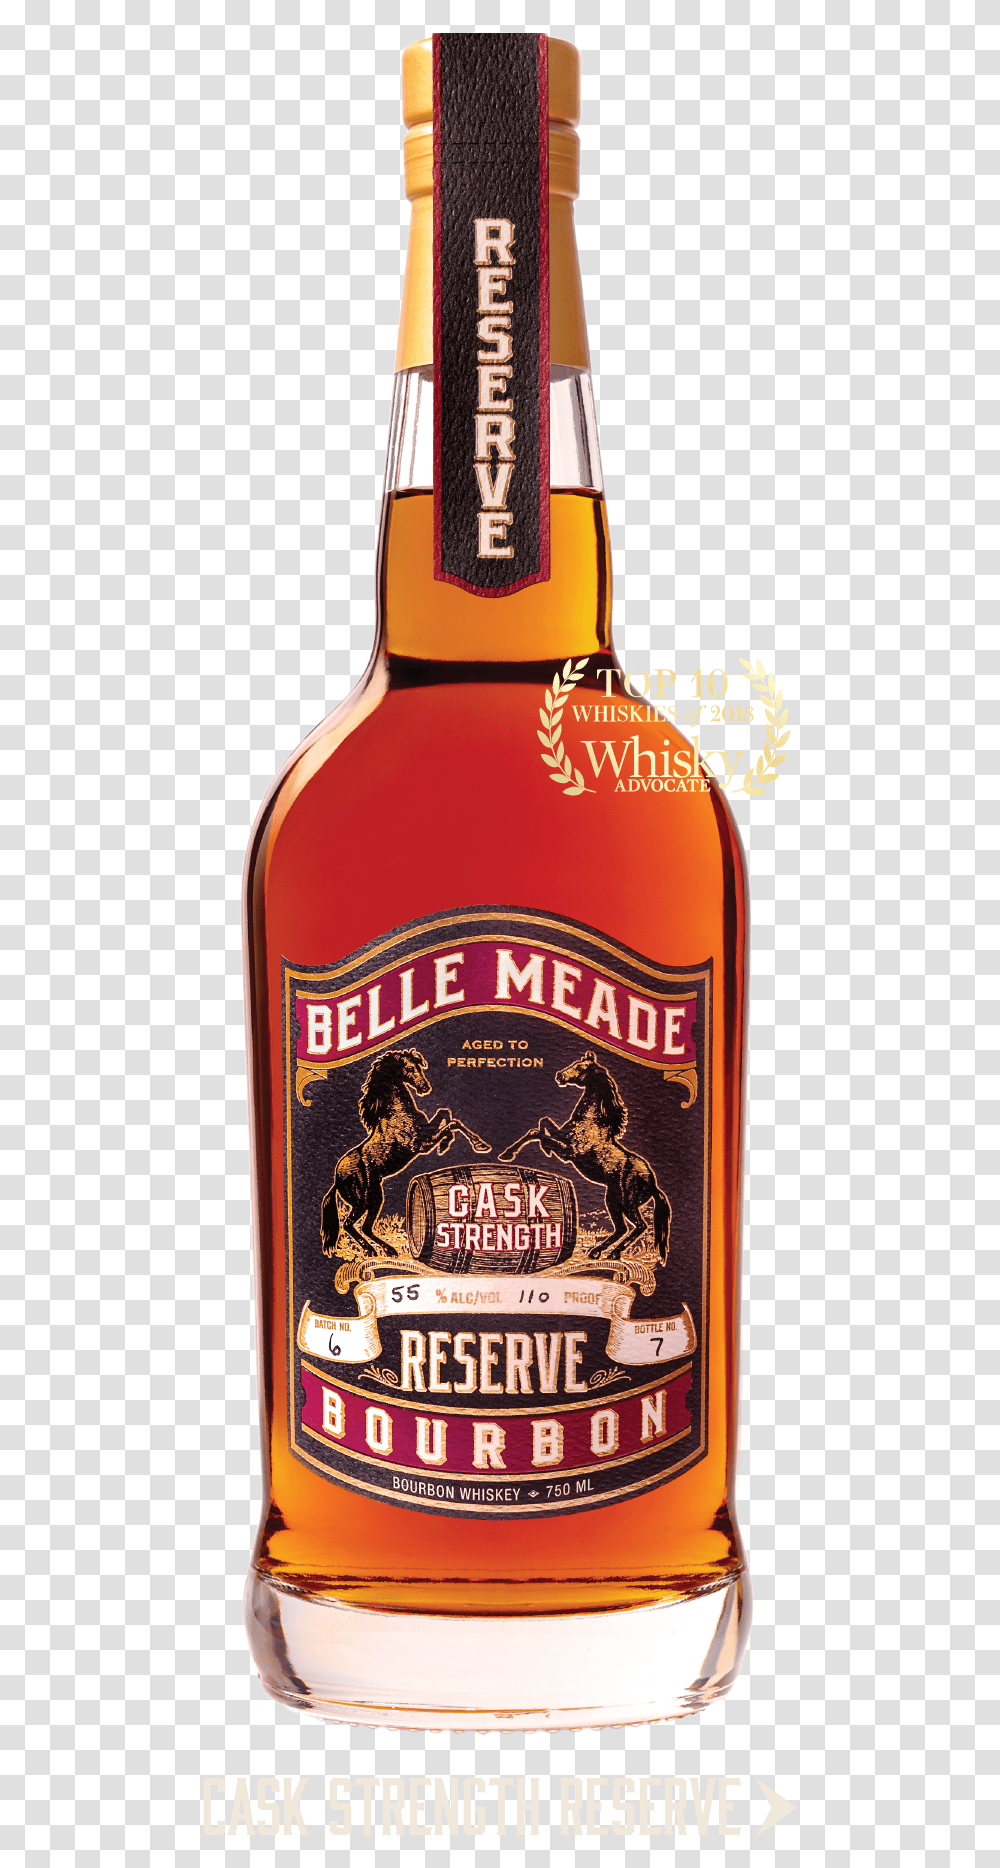 Belle Meade Bourbon Cask Strength Reserve, Liquor, Alcohol, Beverage, Drink Transparent Png